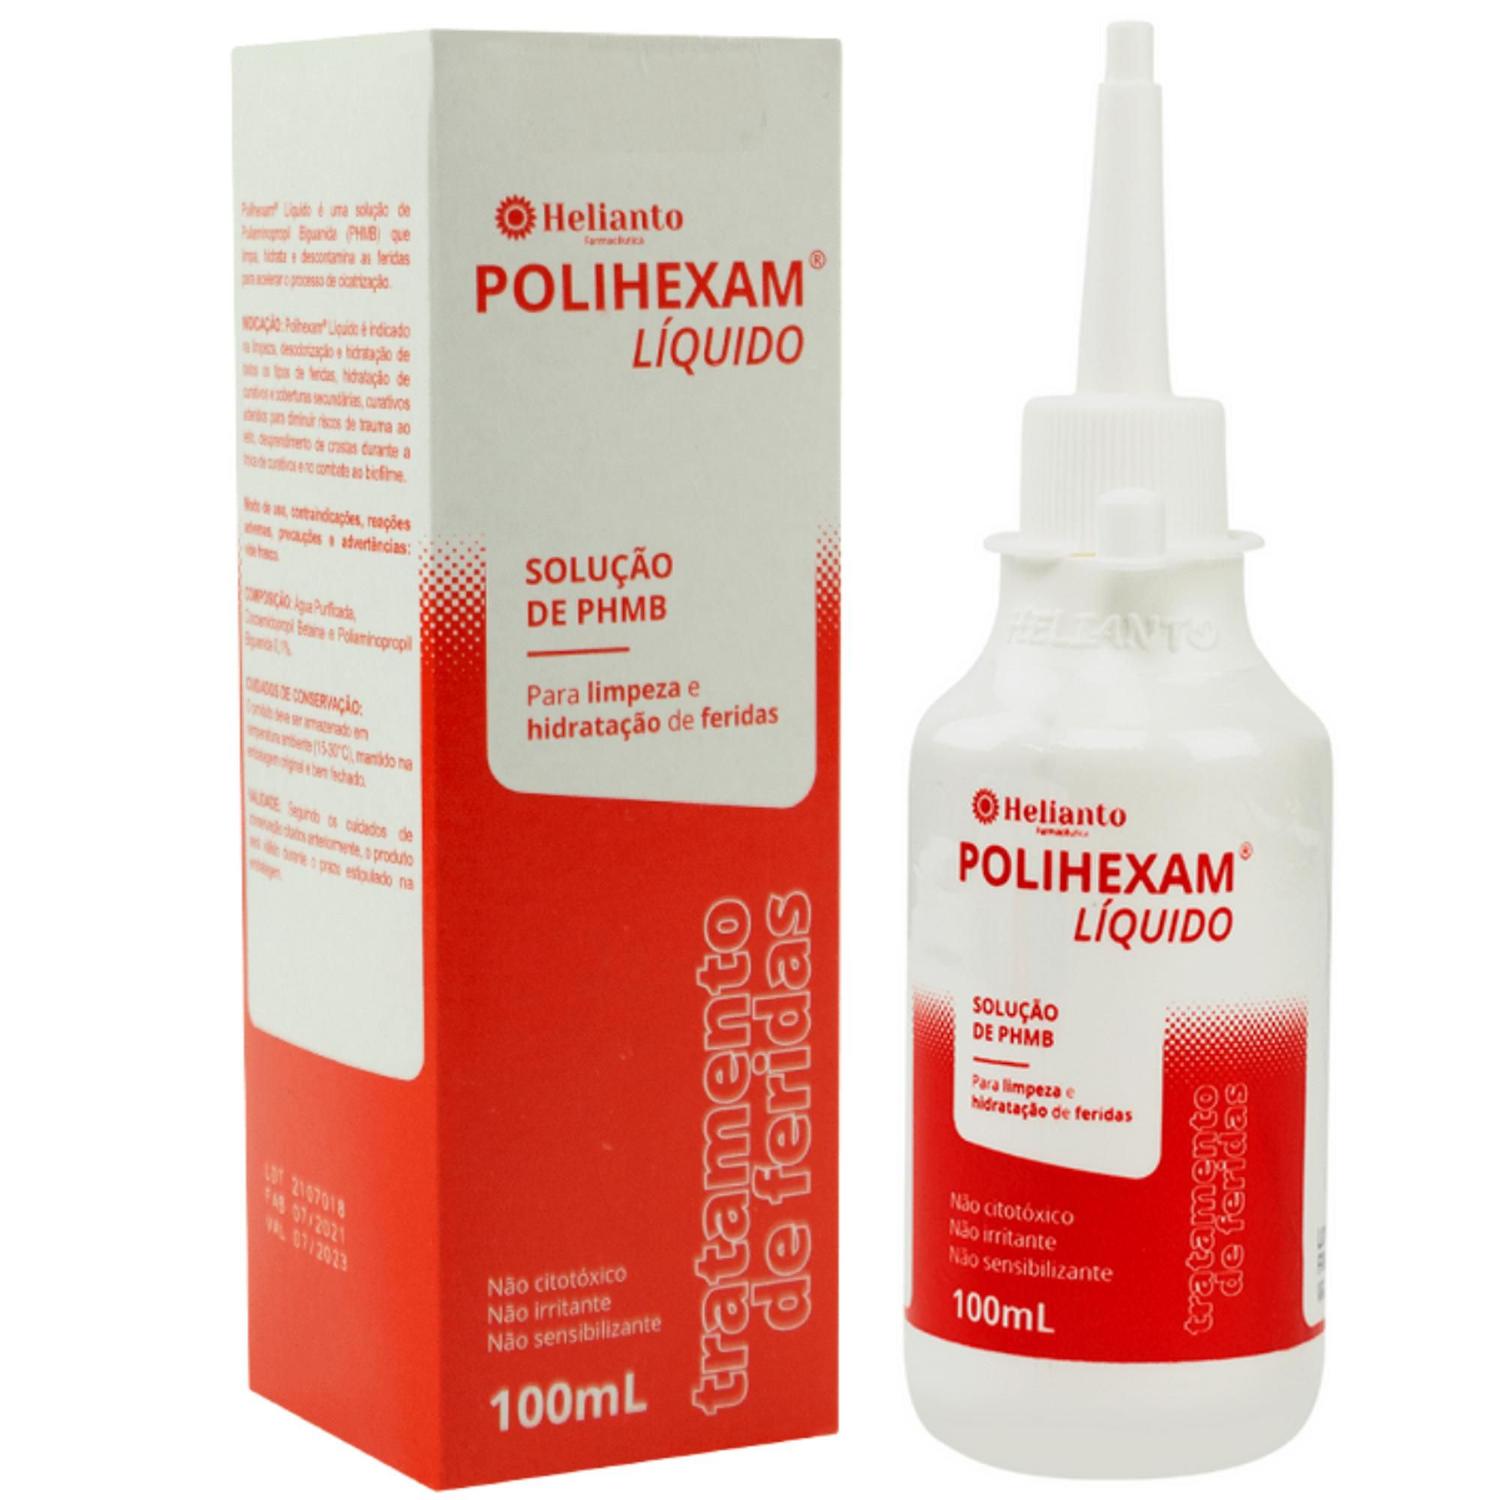 Polihexam Solução De Phmb 0,1% 100ml P/ Limpeza De Feridas - Helianto  Farmacêutica - Medicamentos - Magazine Luiza